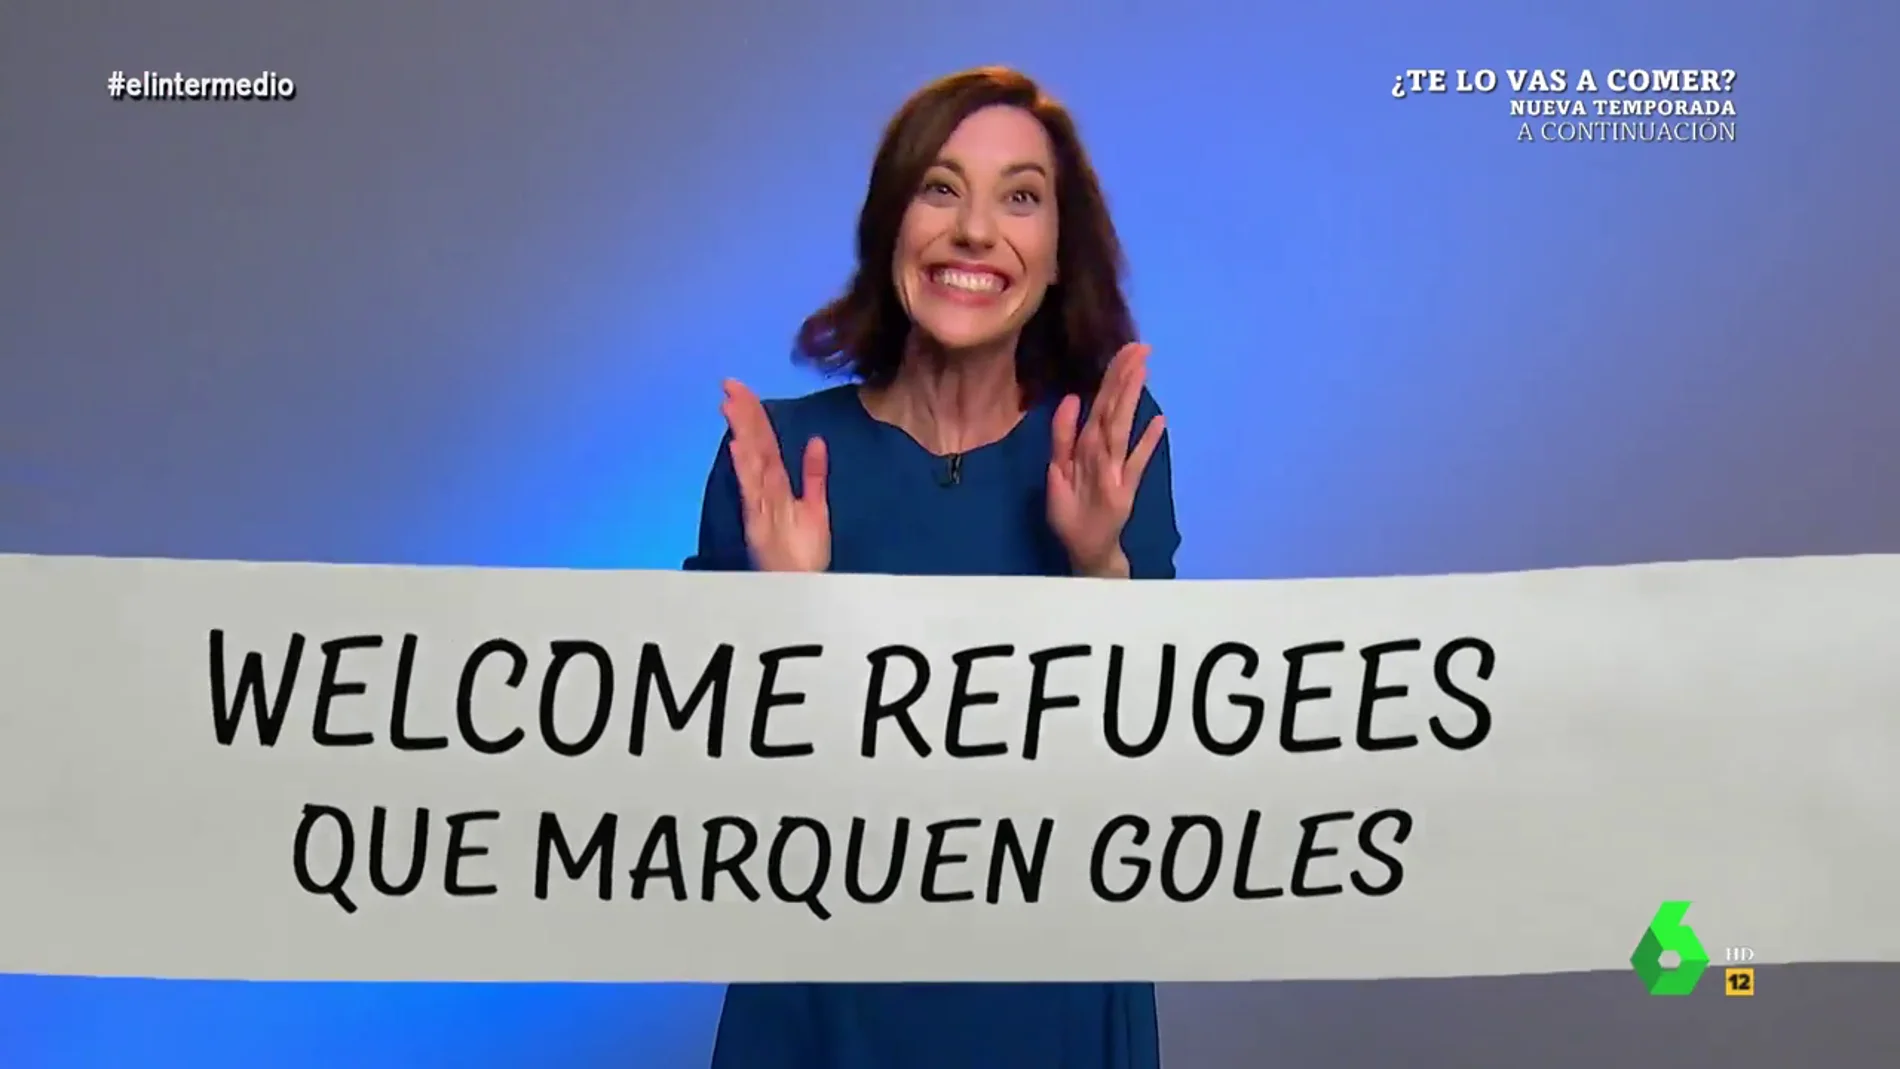  Así fue el irónico análisis de Cristina Gallego sobre los menas: "Welcome Refugees que marquen goles"